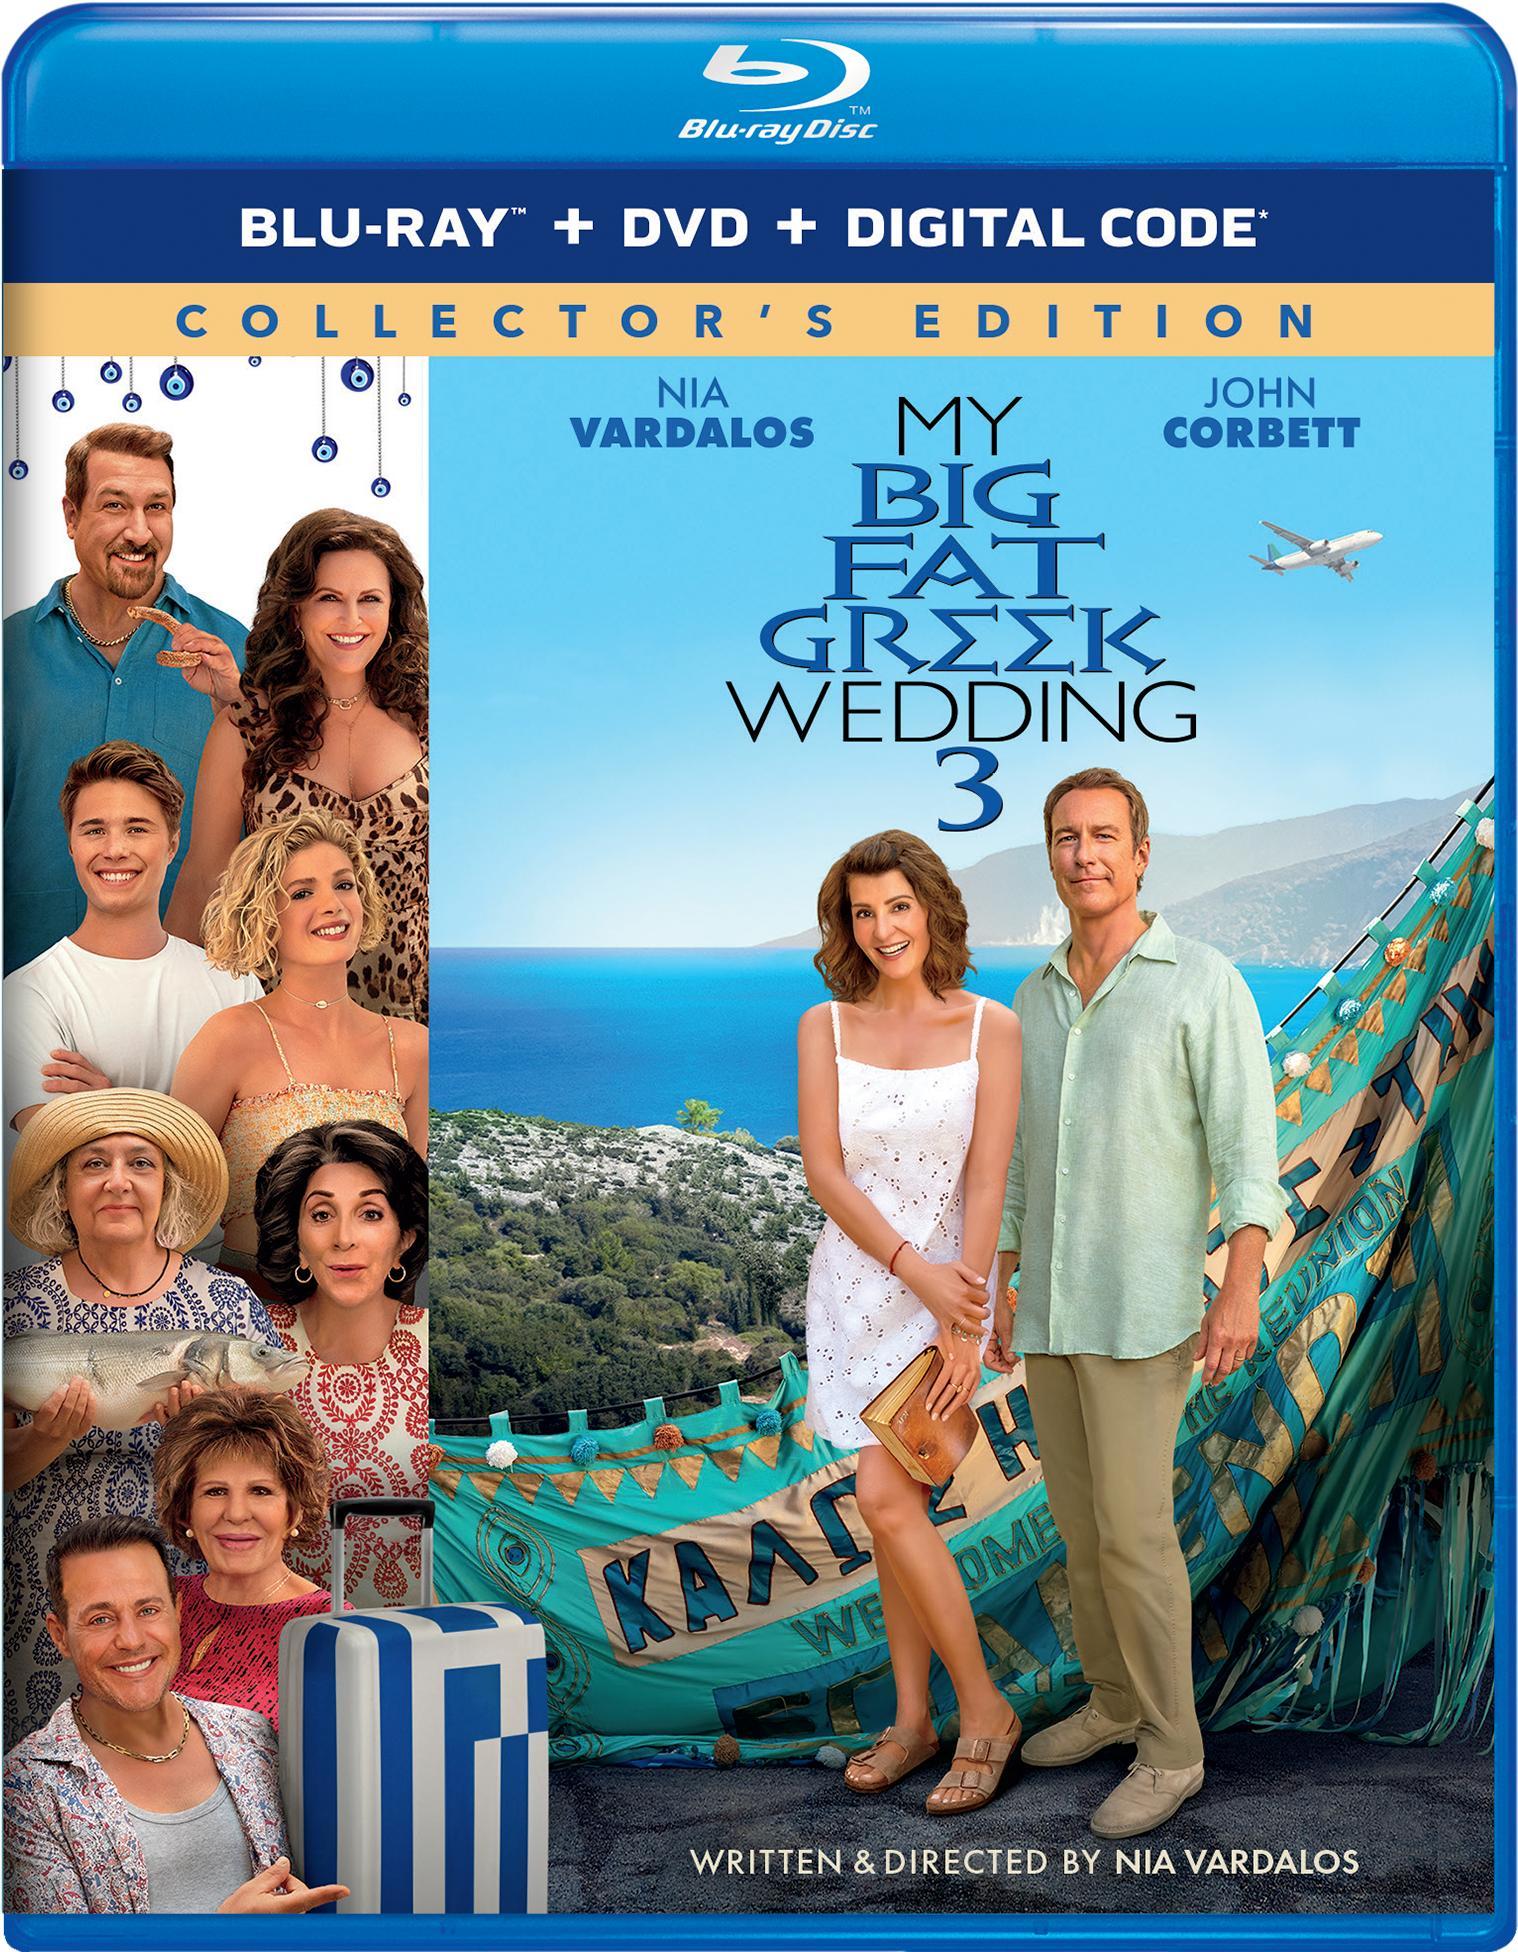 My Big Fat Greek Wedding 3 (with DVD) - Blu-ray